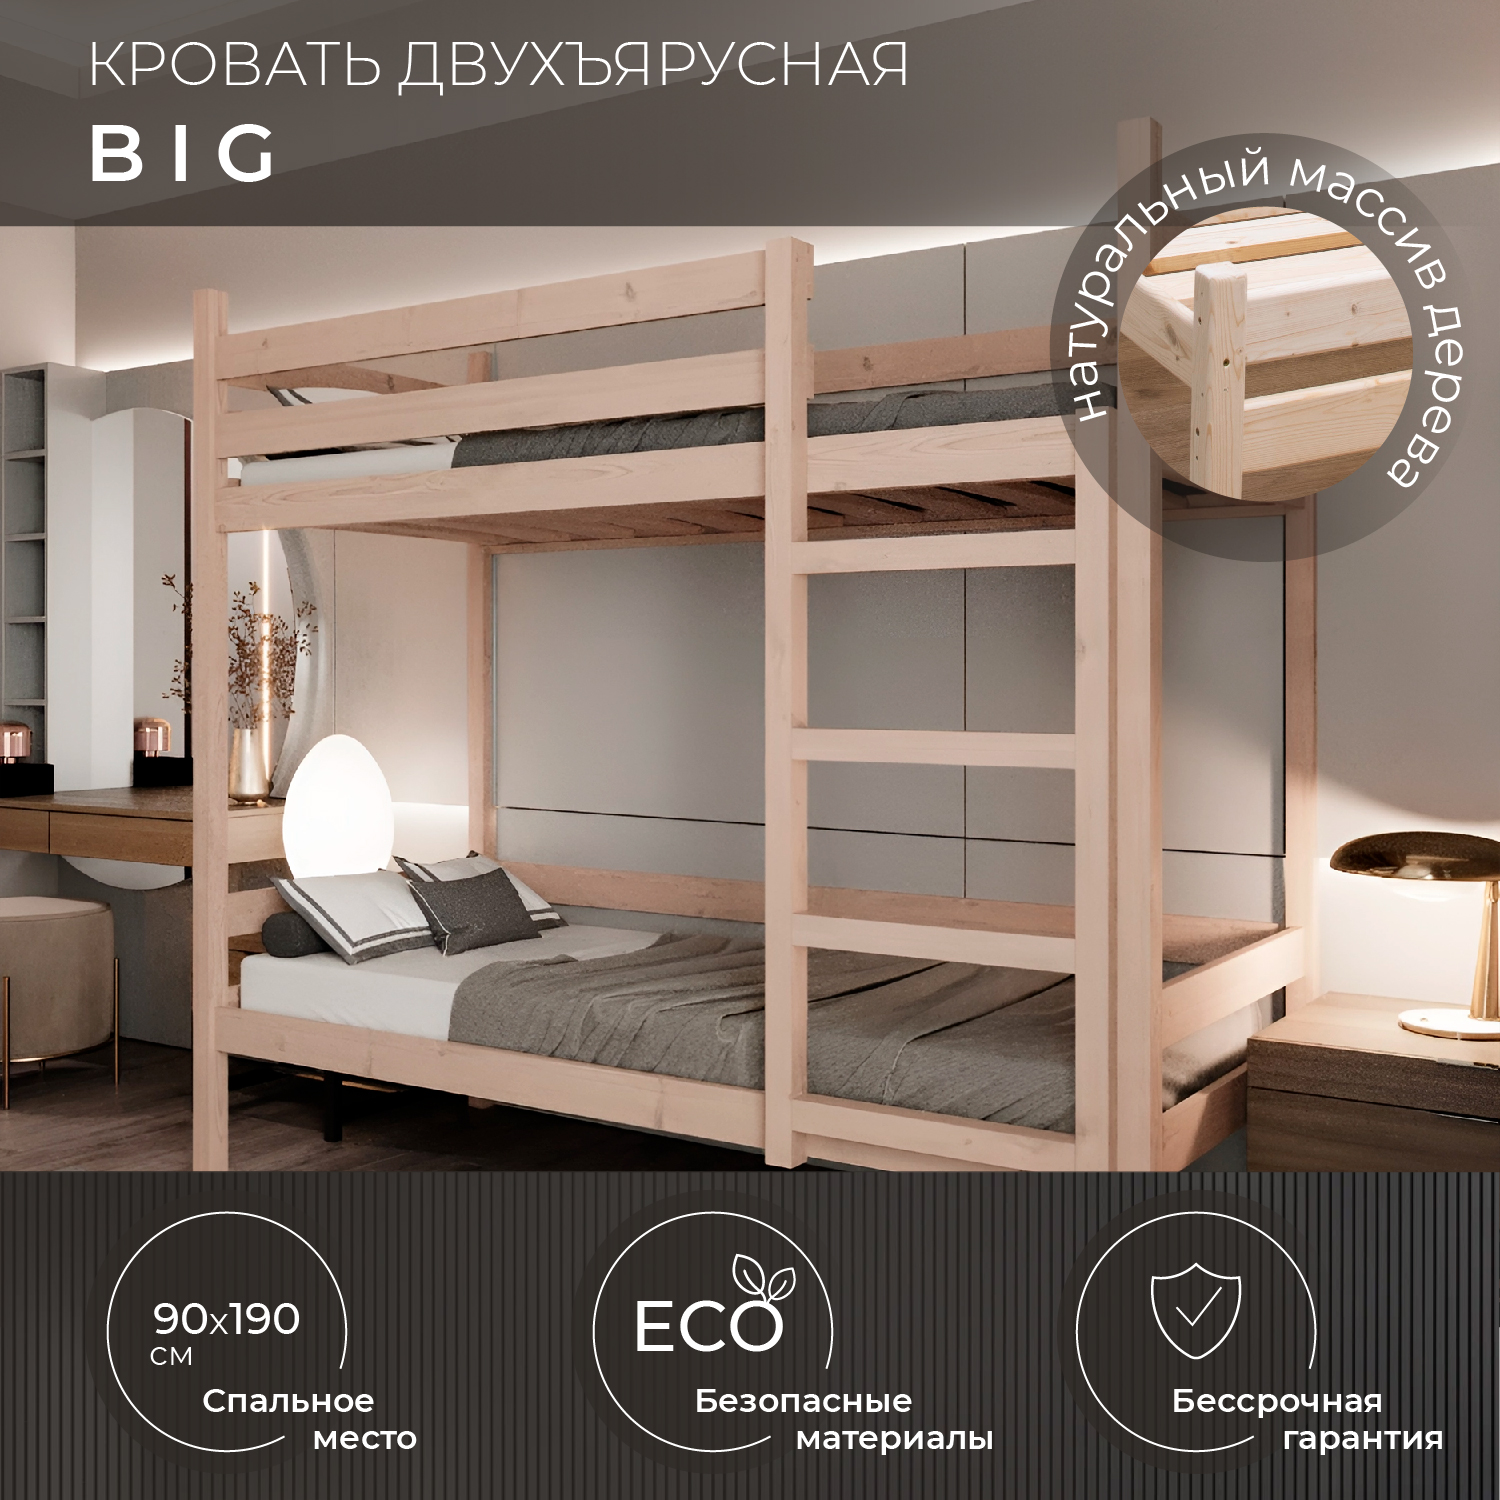 Двухъярусная кровать Новирон Big 90х190 см